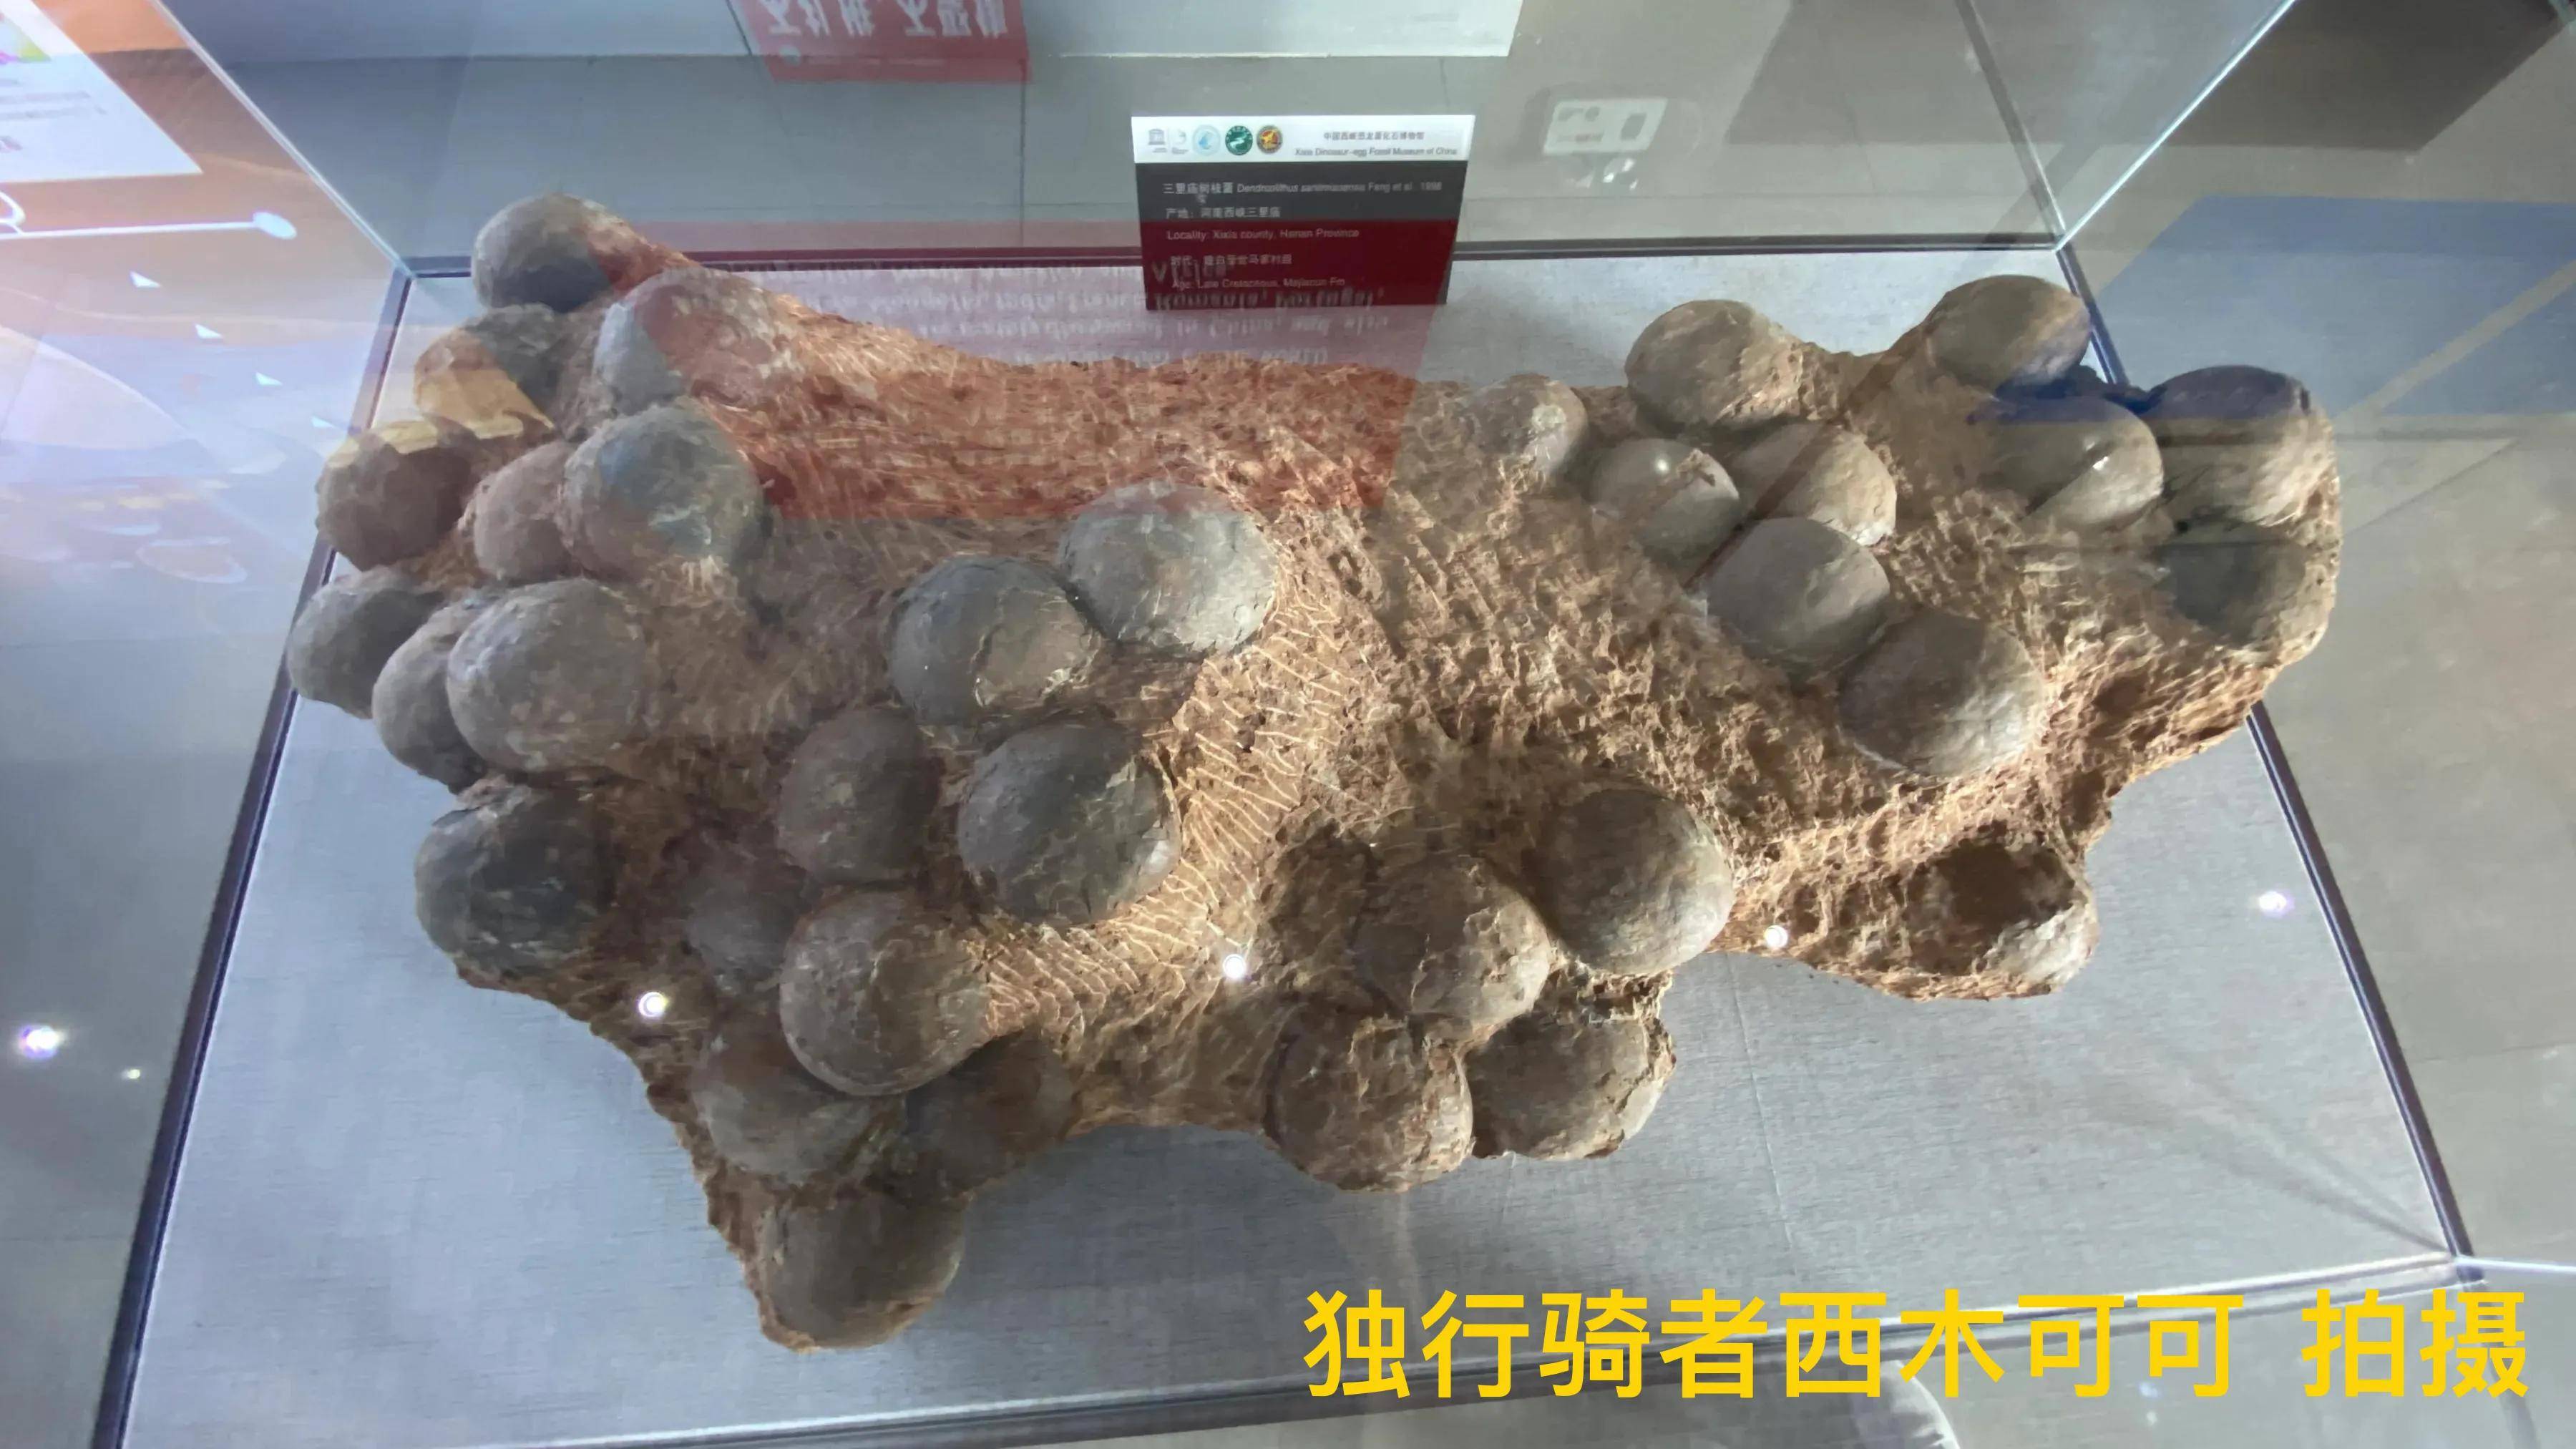 原创恐龙王国中国西峡恐龙蛋化石博物馆